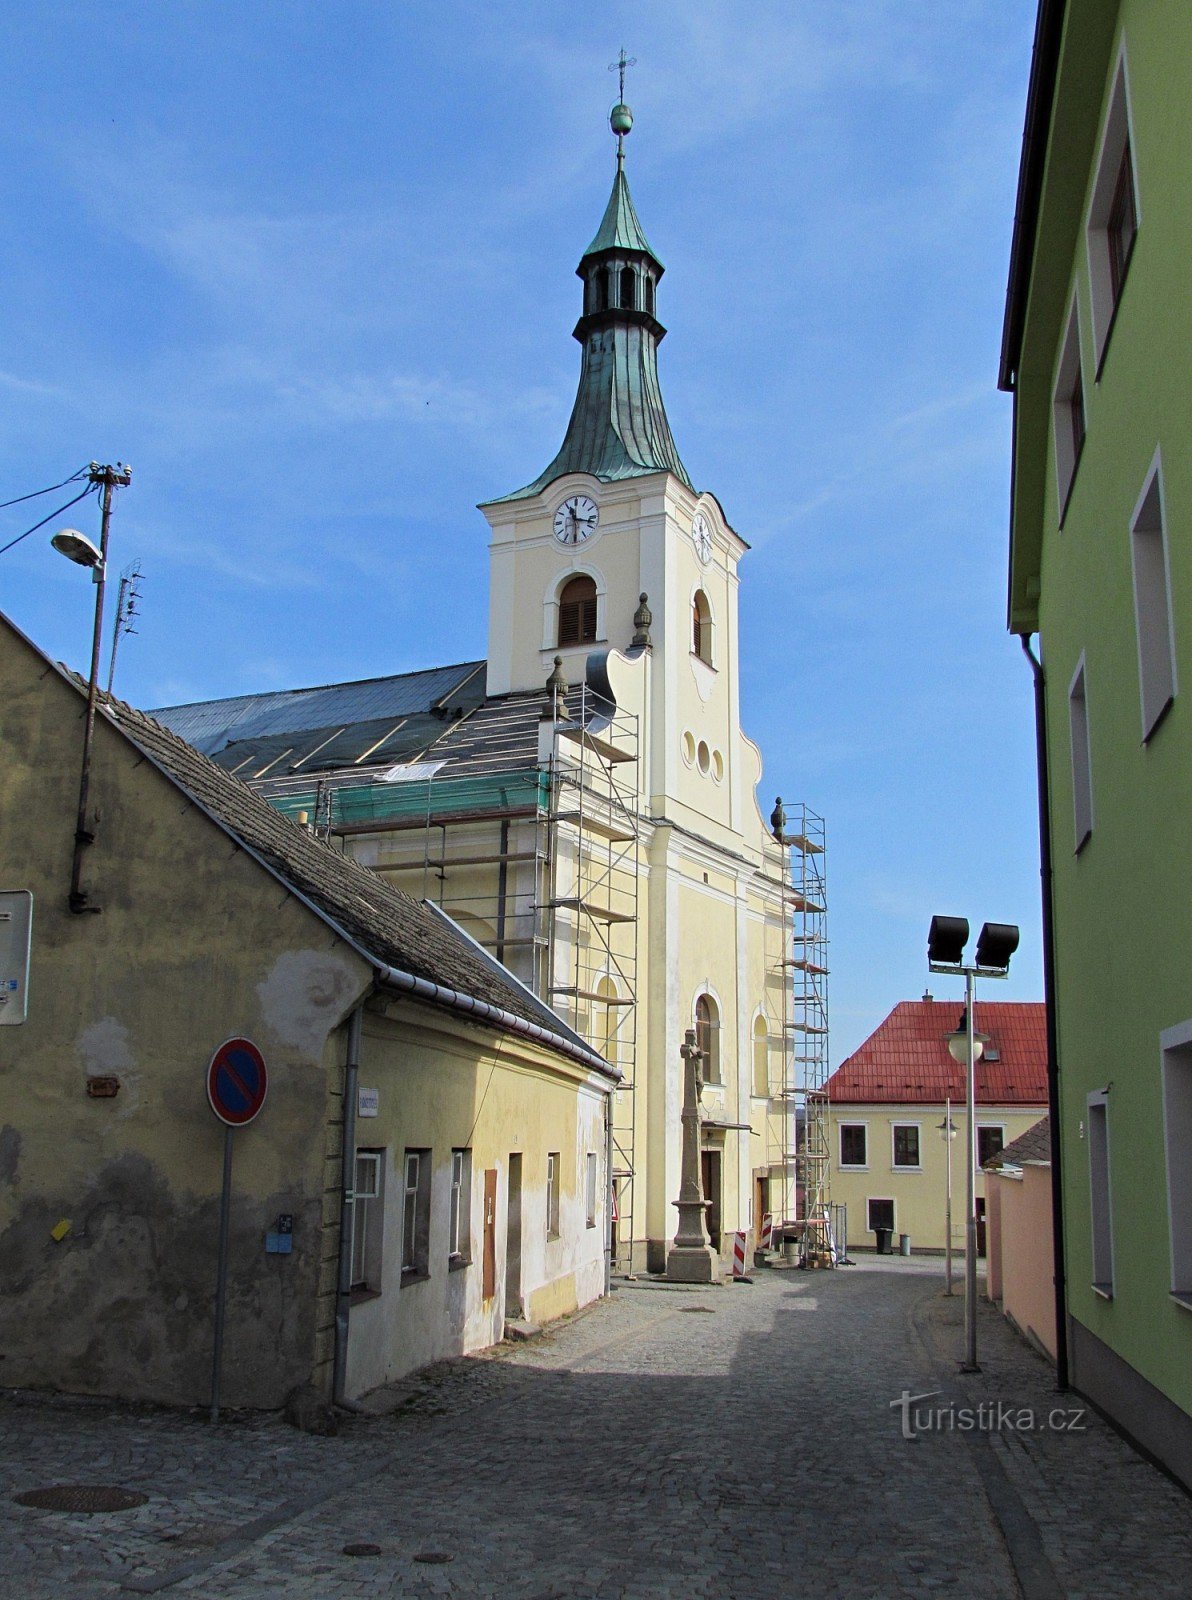 die Kirche St. Nikolaus von außen